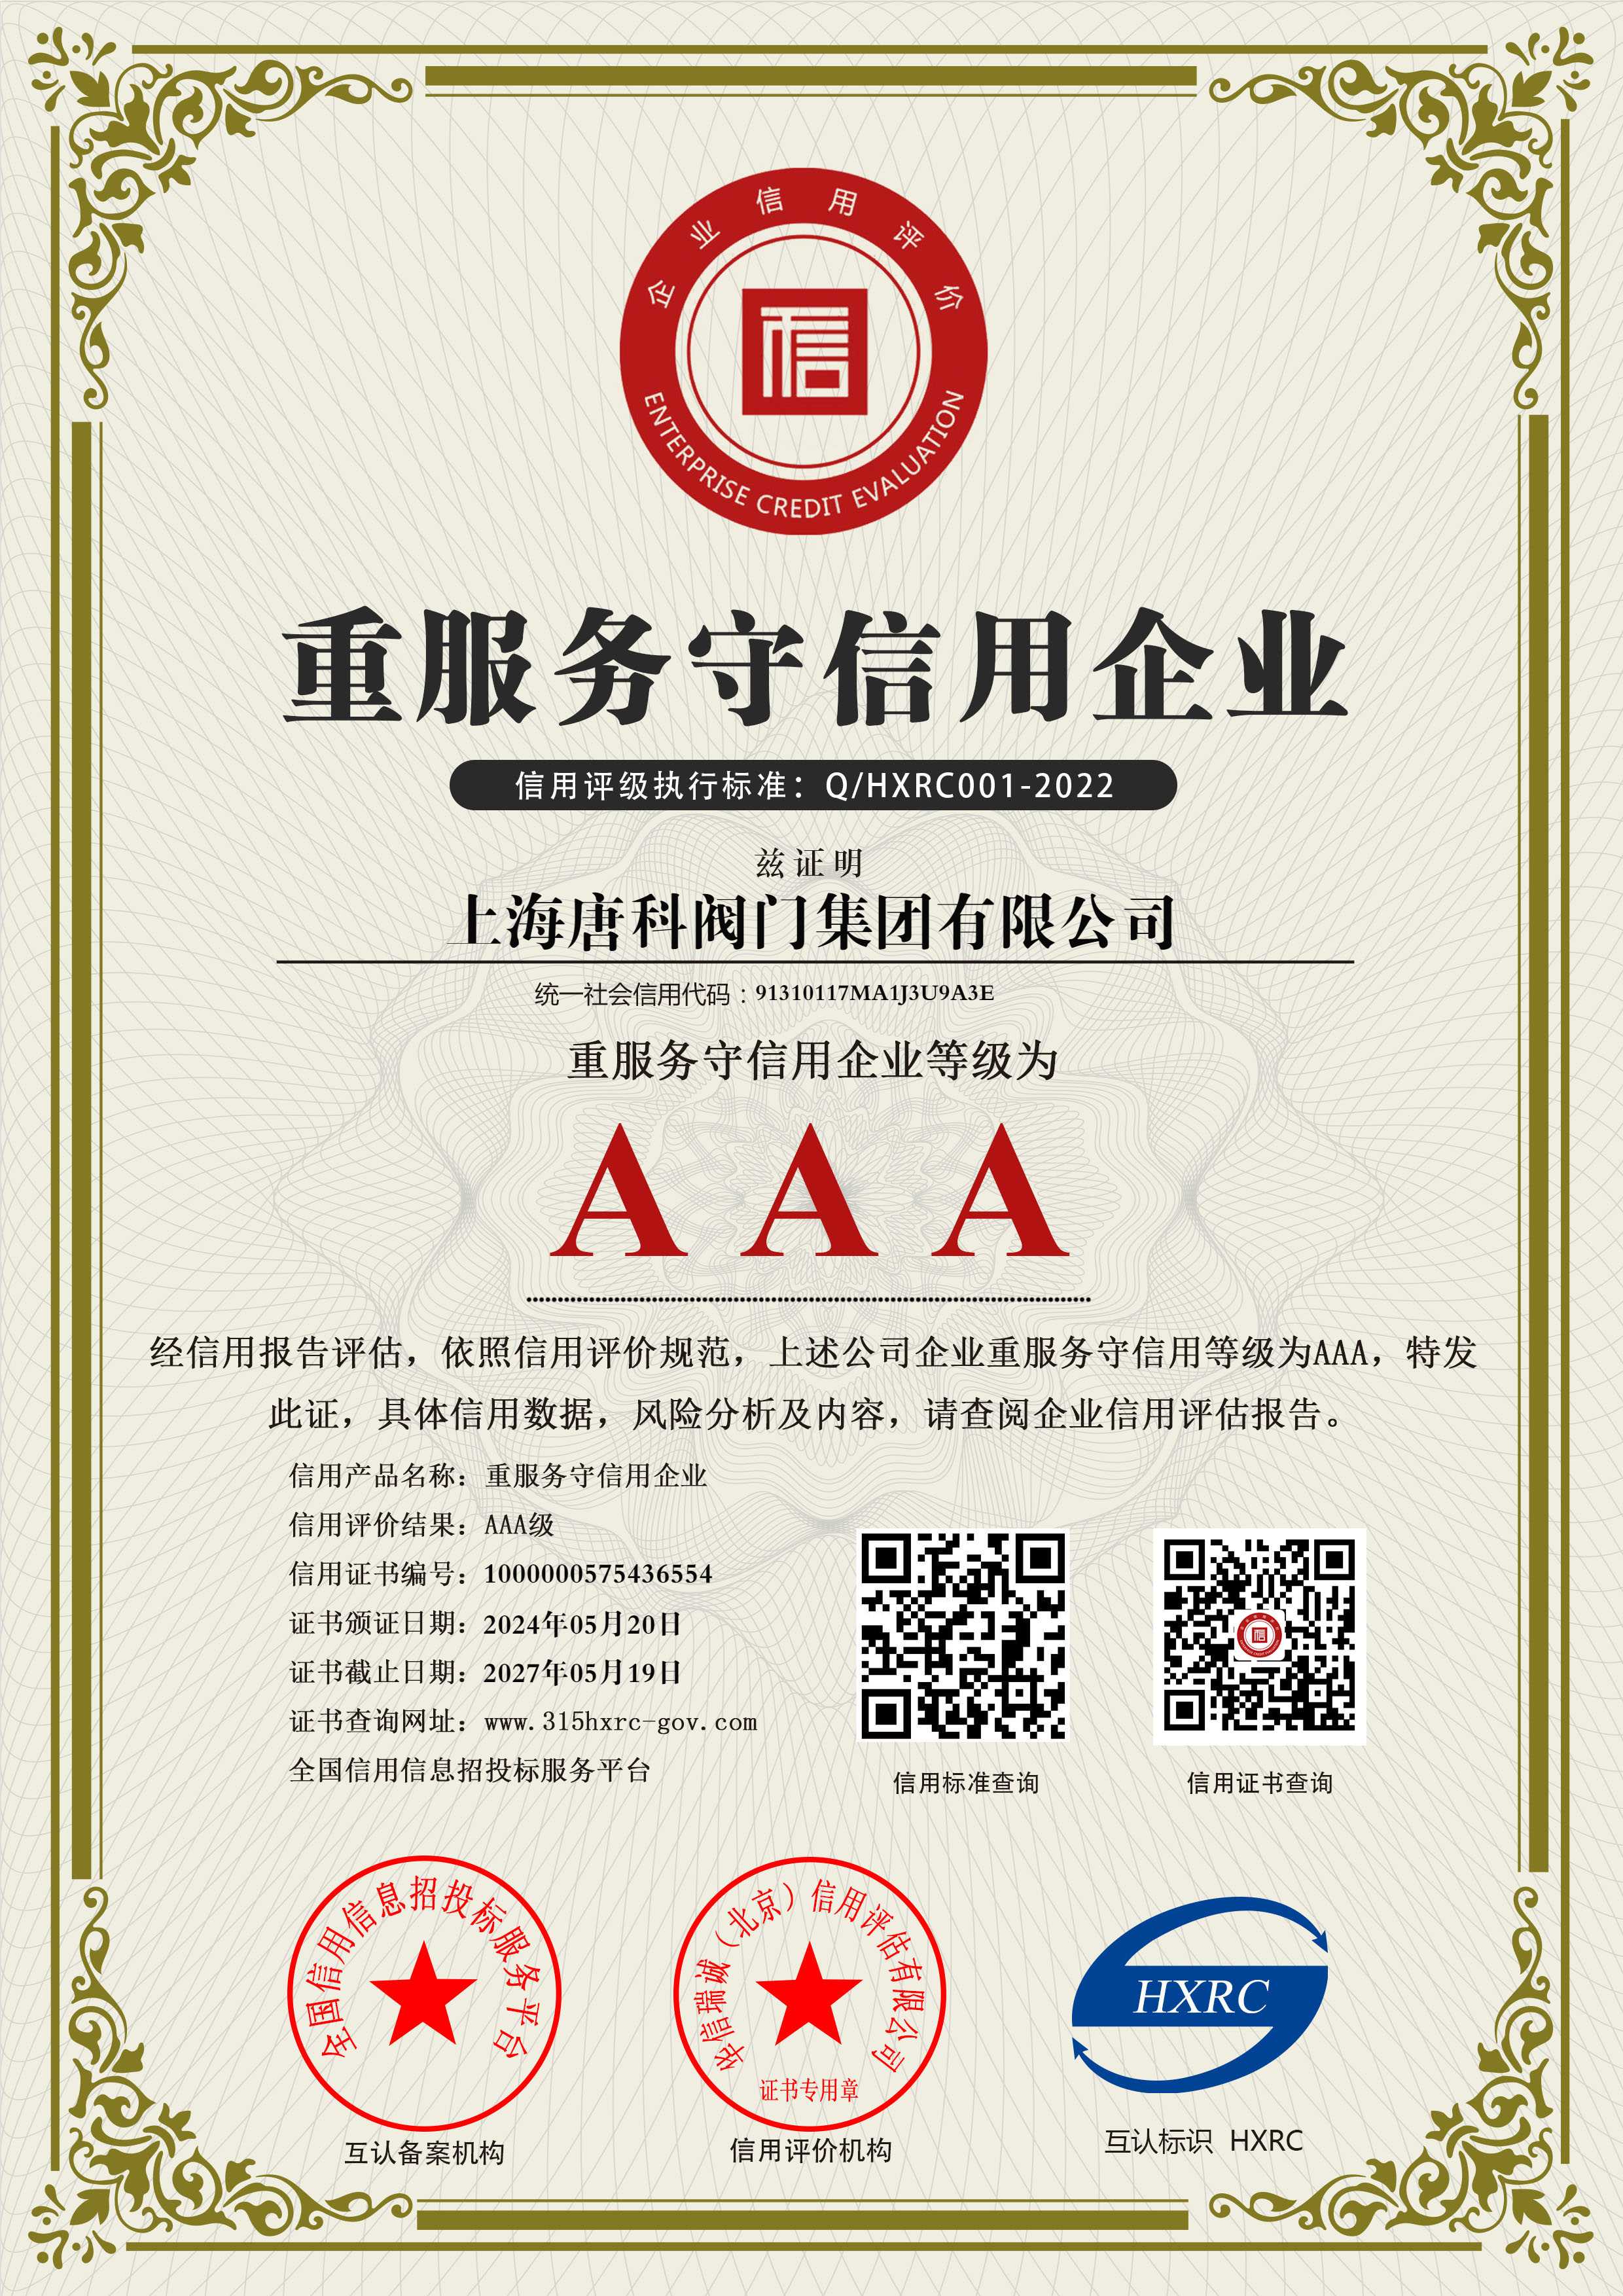 12 上海唐科閥門集團有限公司-AAA級重服務守信用企業-新版